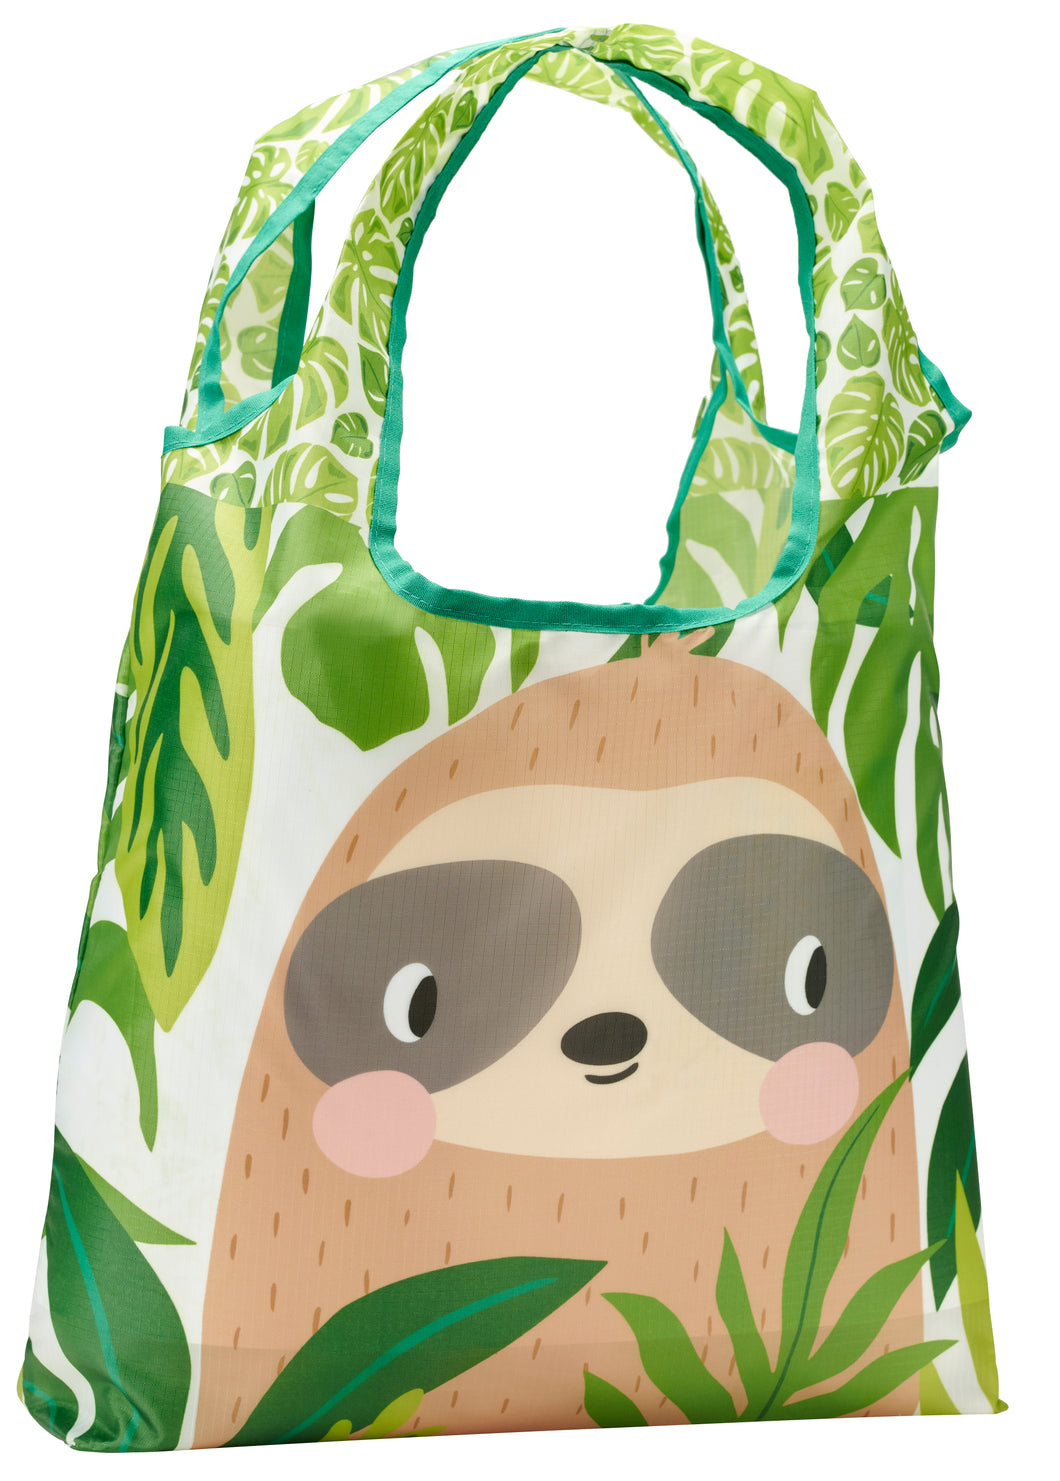 O-WITZ Reusable Shopping Bag - Sloth Green